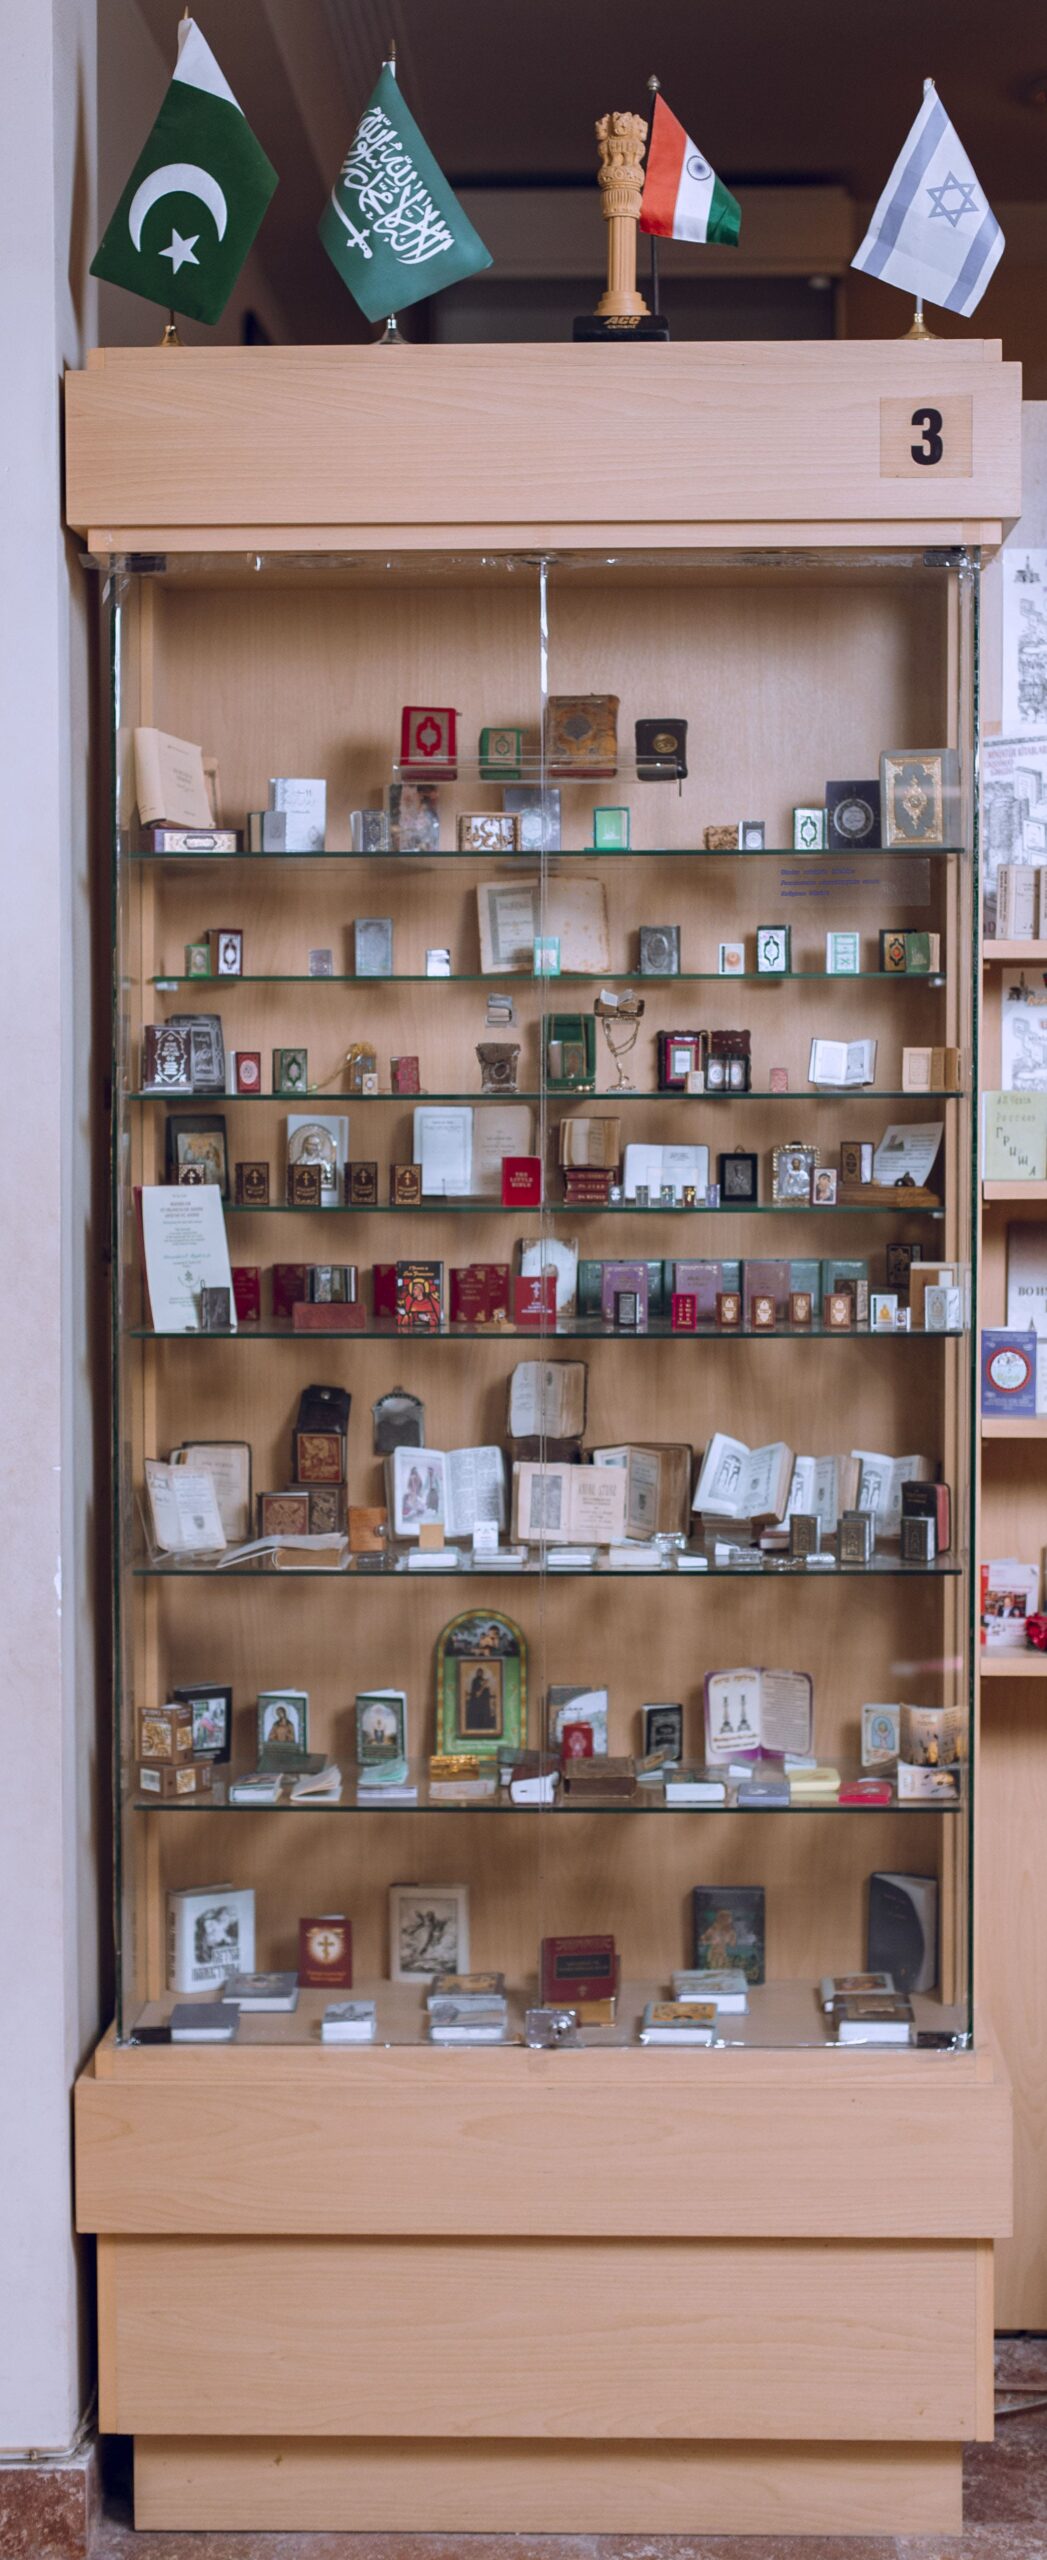 Museum of Miniature Books